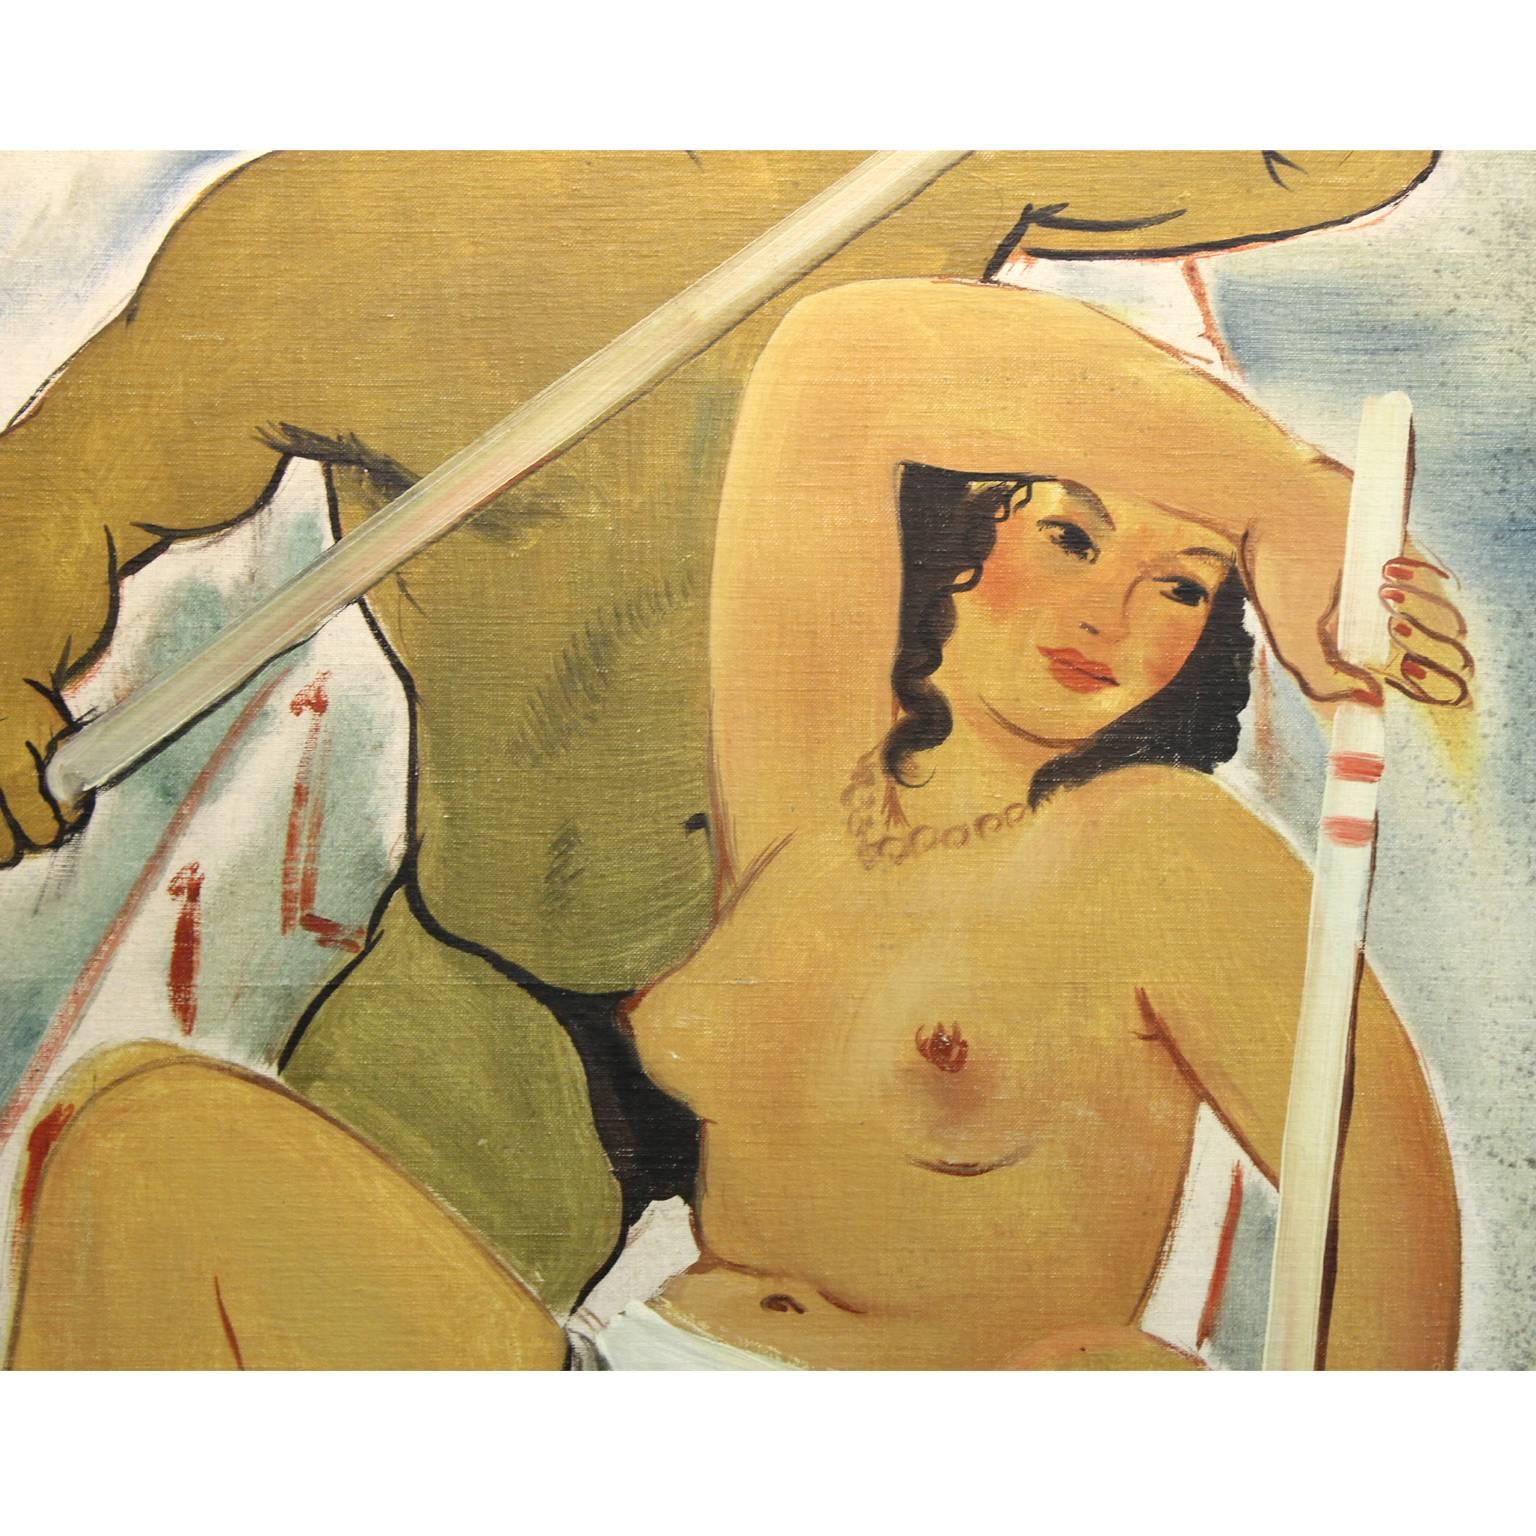 Huile sur toile Art Déco française représentant un couple dans un bateau par Lucien Joseph Fontanarosa, (Paris 1912-1989) . La toile est posée sur un mince panneau de contreplaqué. Peut-être un panneau mural, réalisé dans les années 1940. Légère